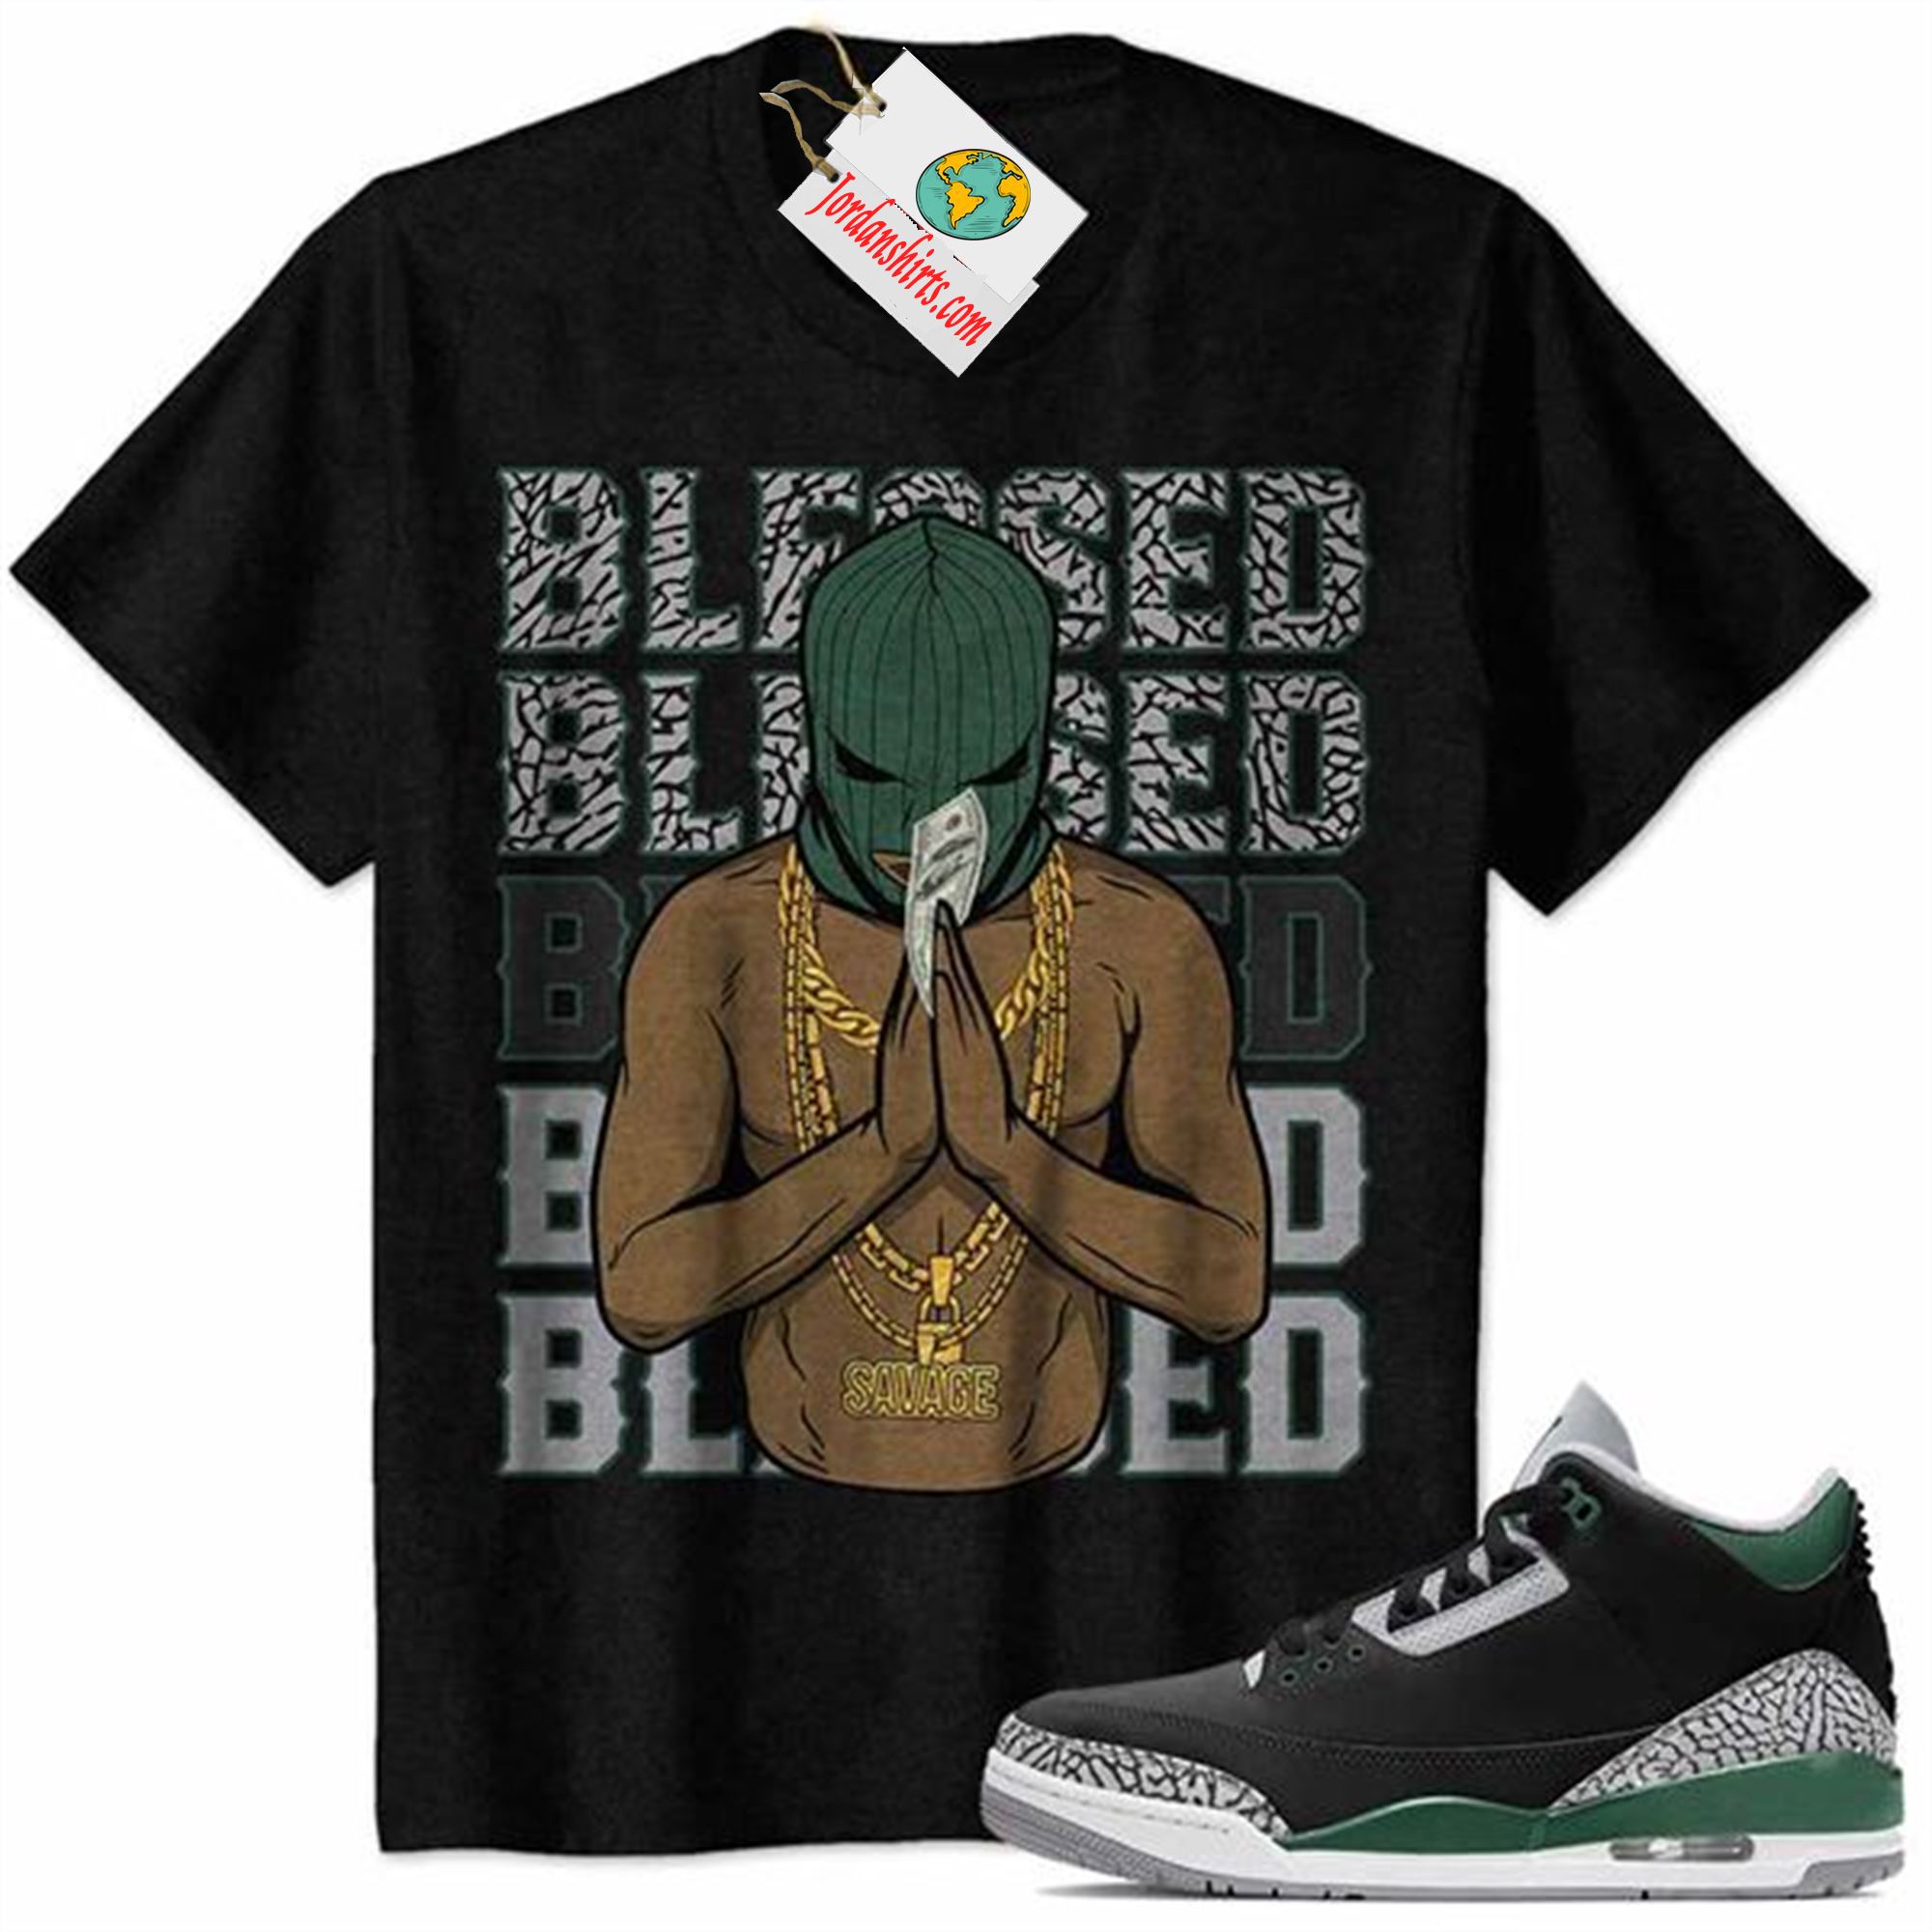 Jordan 3 Shirt, Gangster Ski Mask Man Savage Blessed Black Air Jordan 3 Pine Green 3s Size Up To 5xl